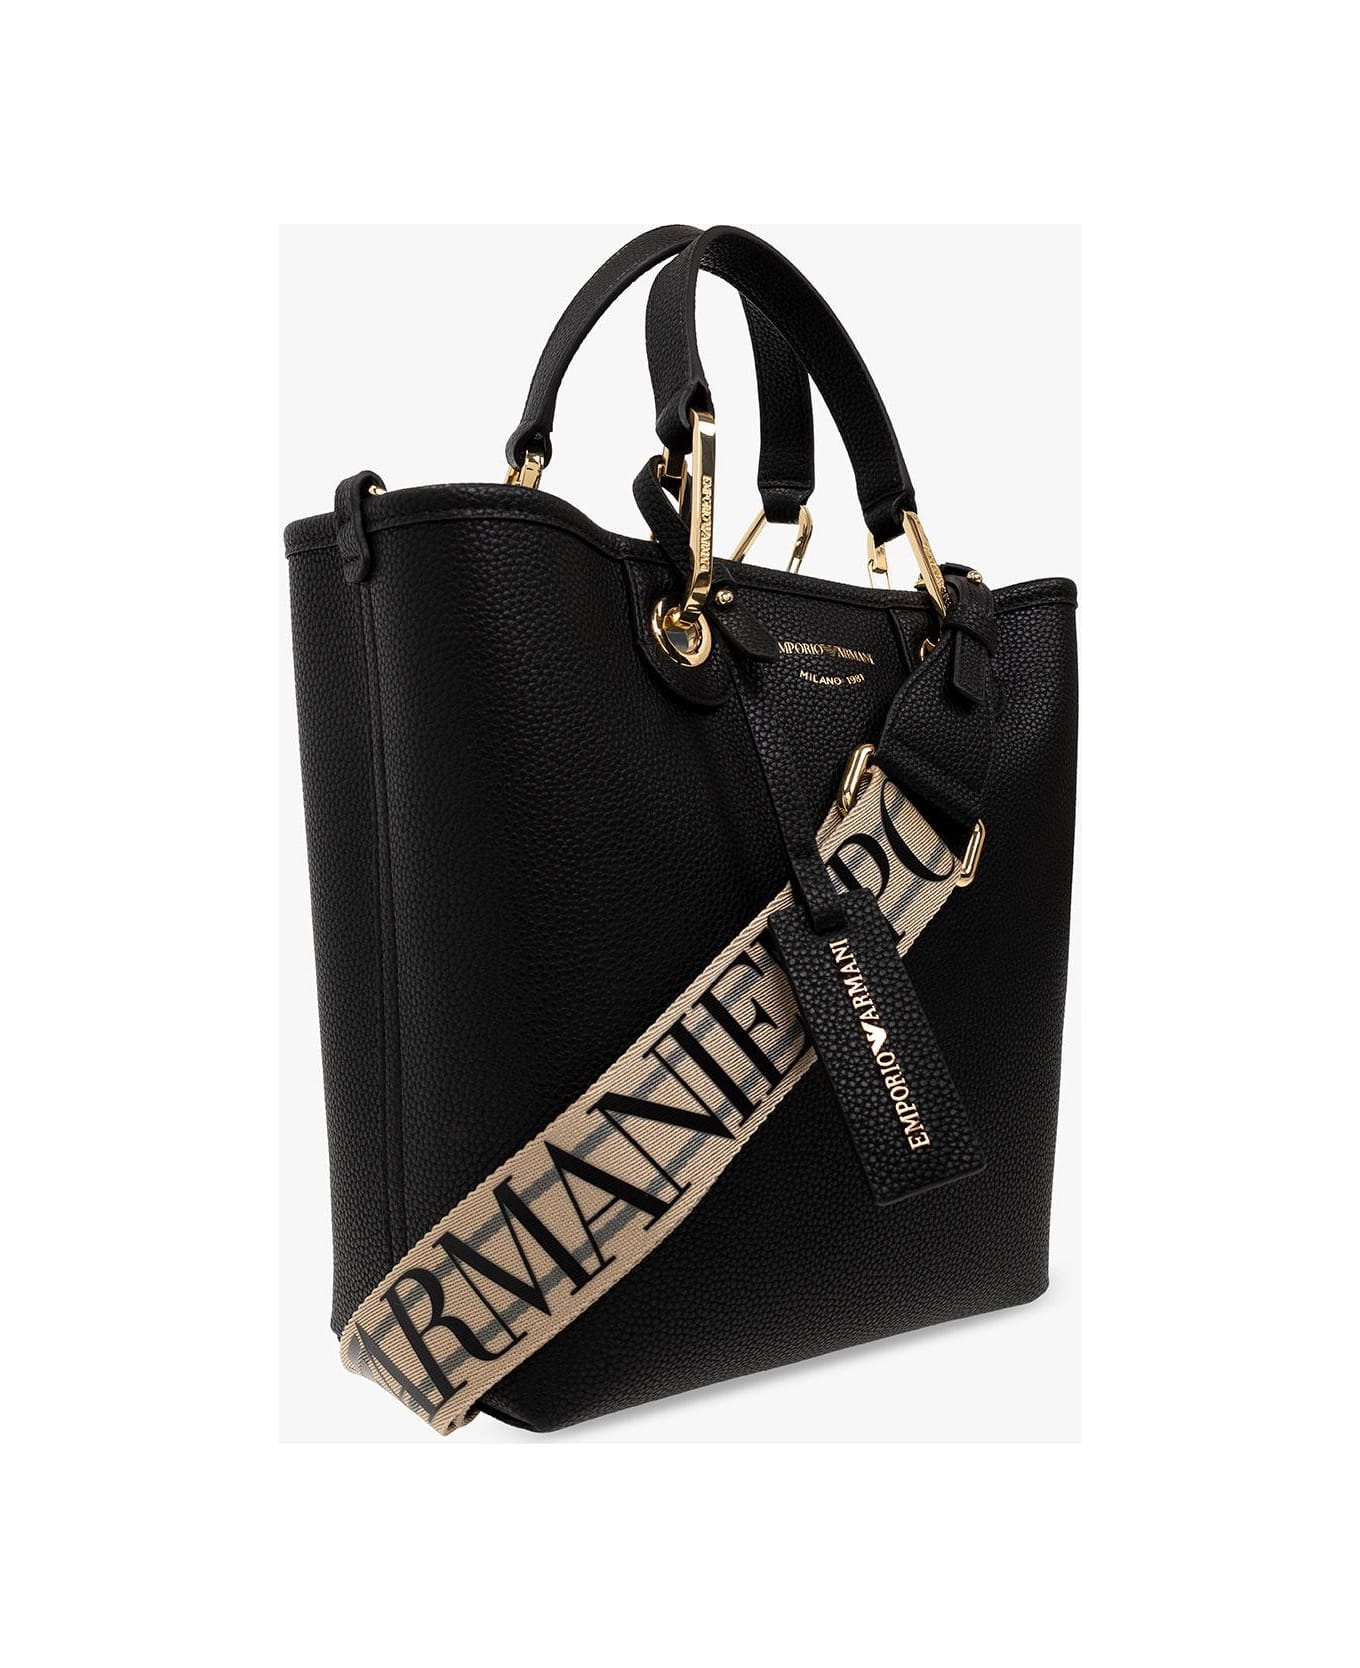 Emporio Armani Shopper Bag With Logo - BLACK トートバッグ